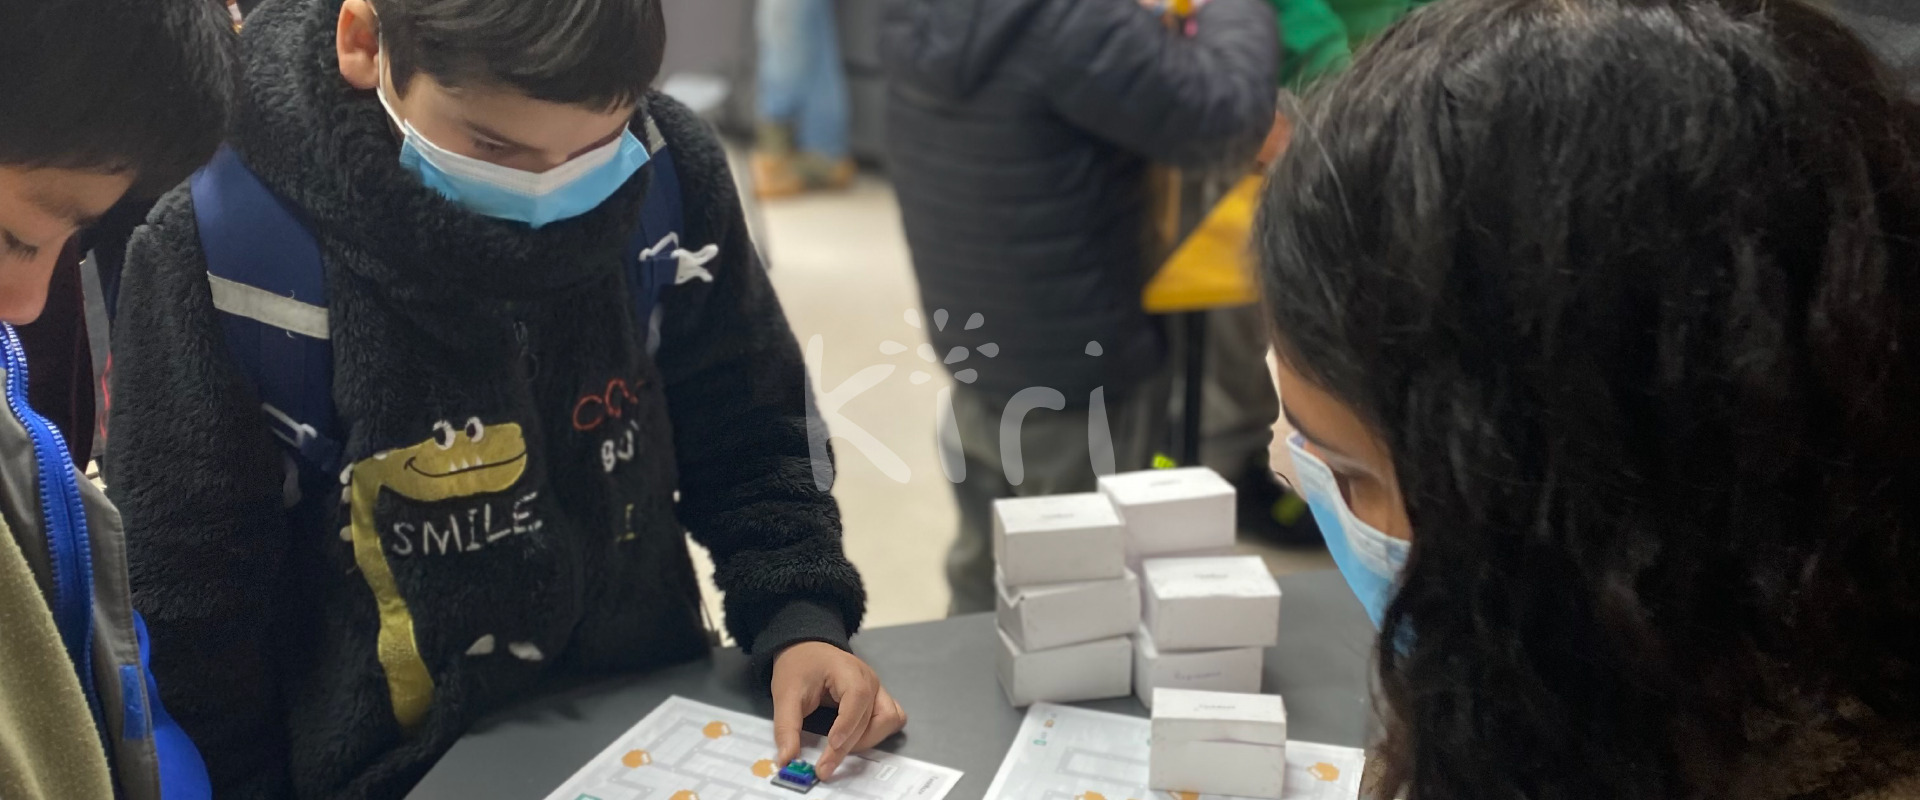 Featured image for “Fundación Kiri llevó a cabo Encuentro de Robótica para niños en la Región Metropolitana”